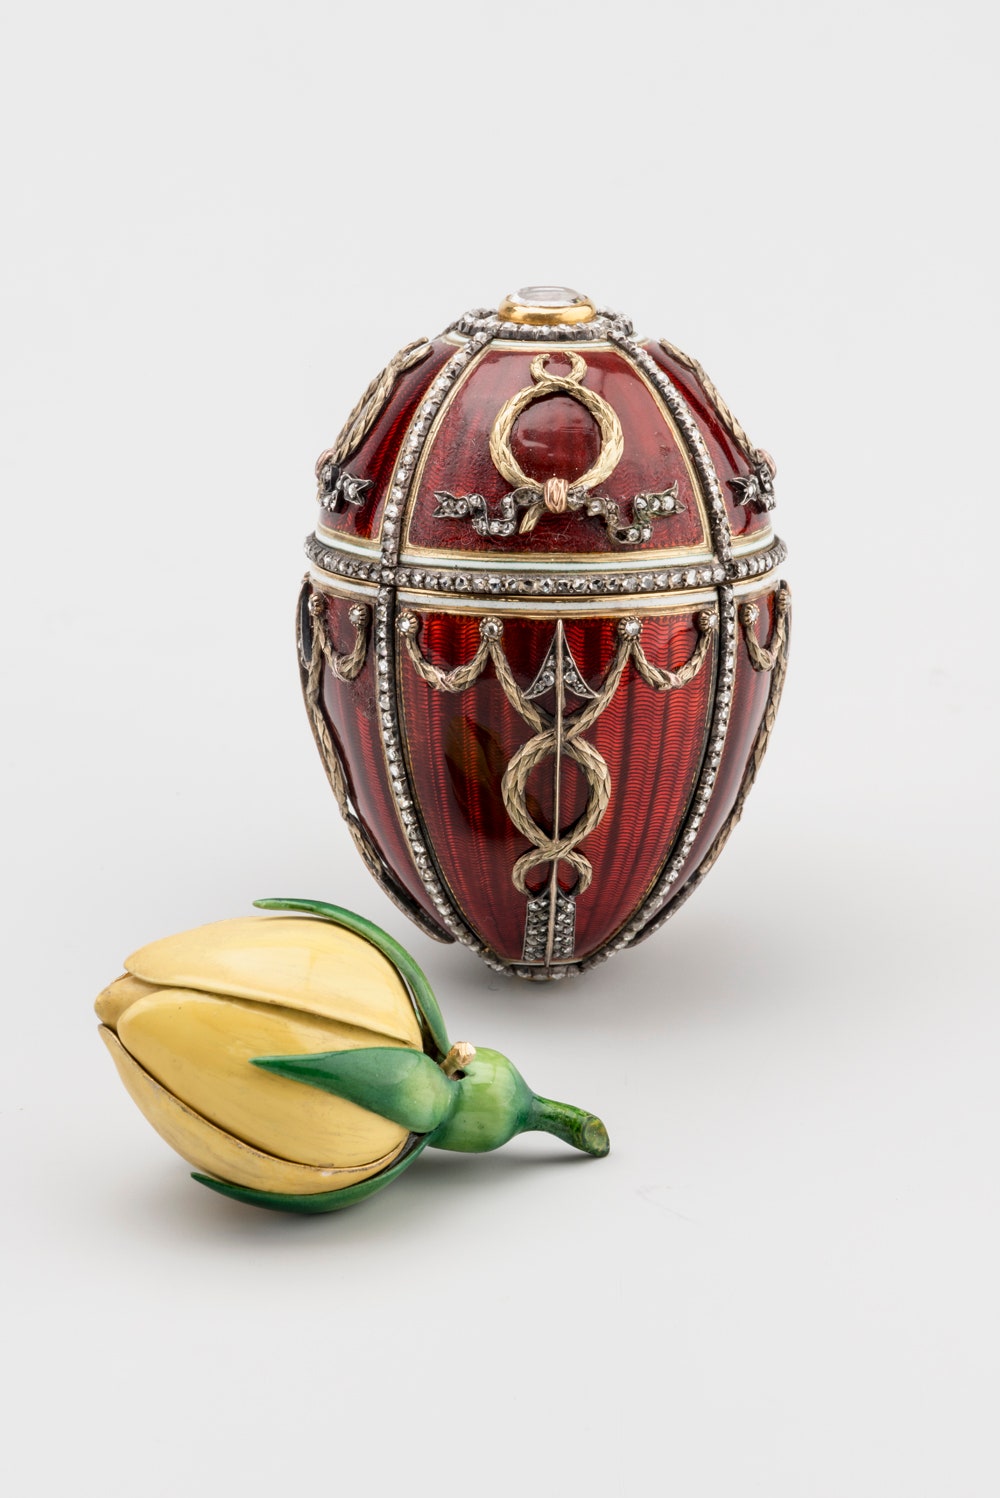 Пасхальное яйцо «Бутон розы». Подарок императора Николая II супруге императрице Александре Федоровне на Пасху 1895 года....